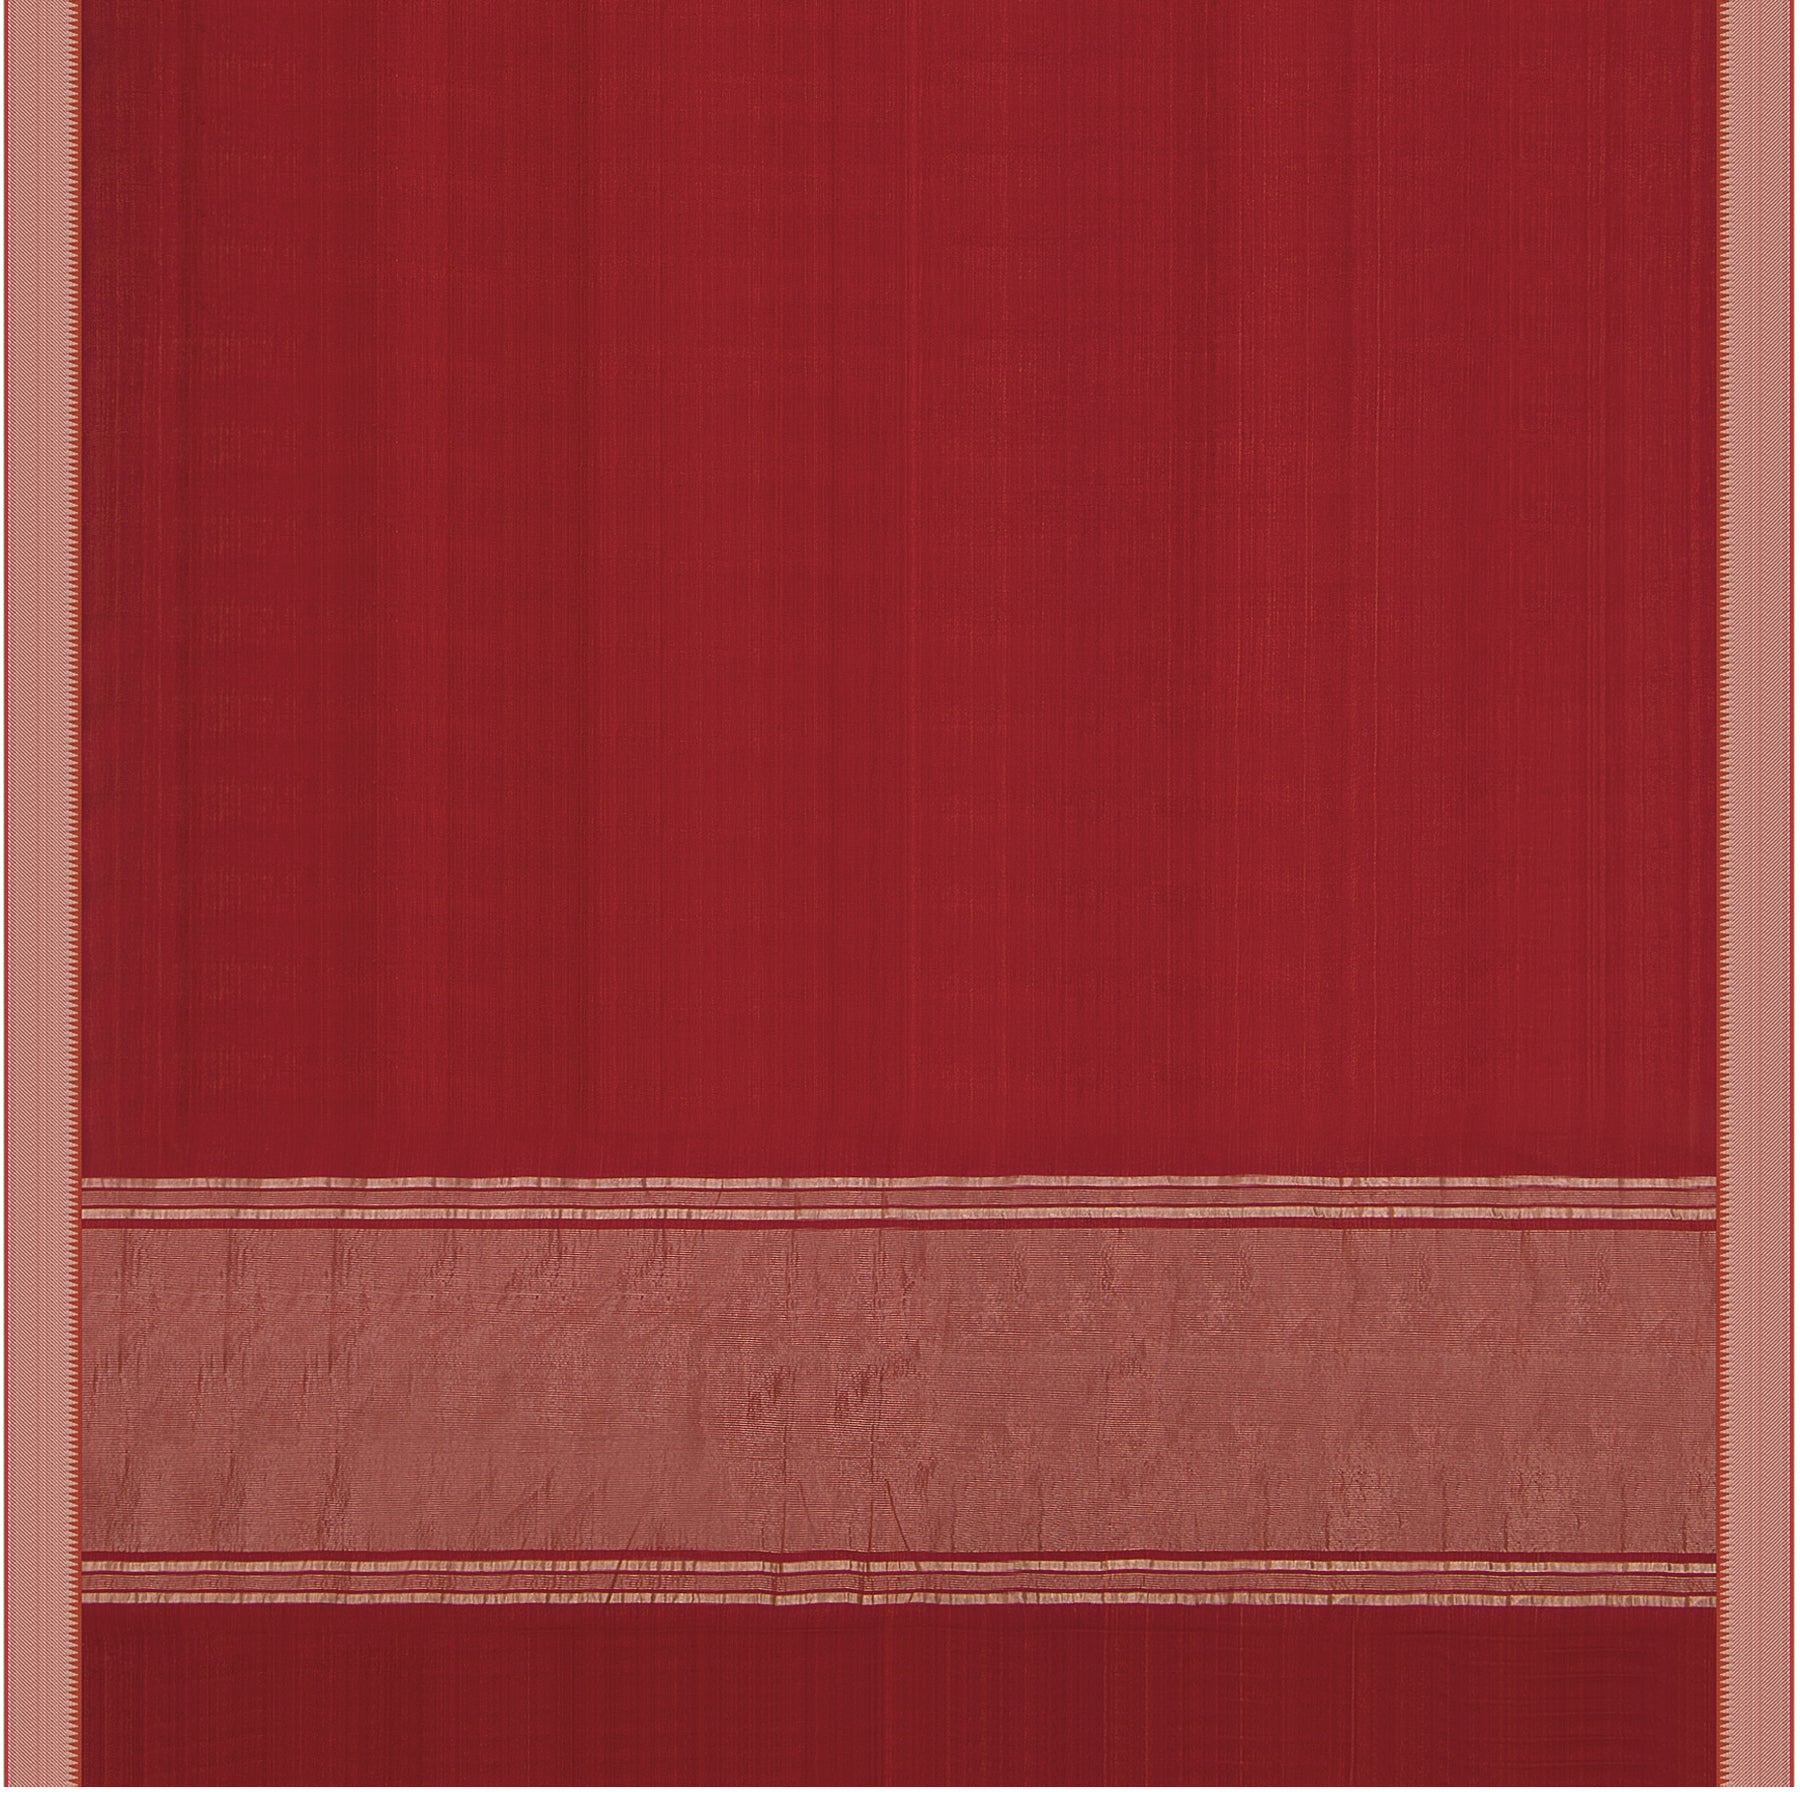 Kanakavalli Mangalgiri Cotton Sari 22-261-HS003-01194 - Full View